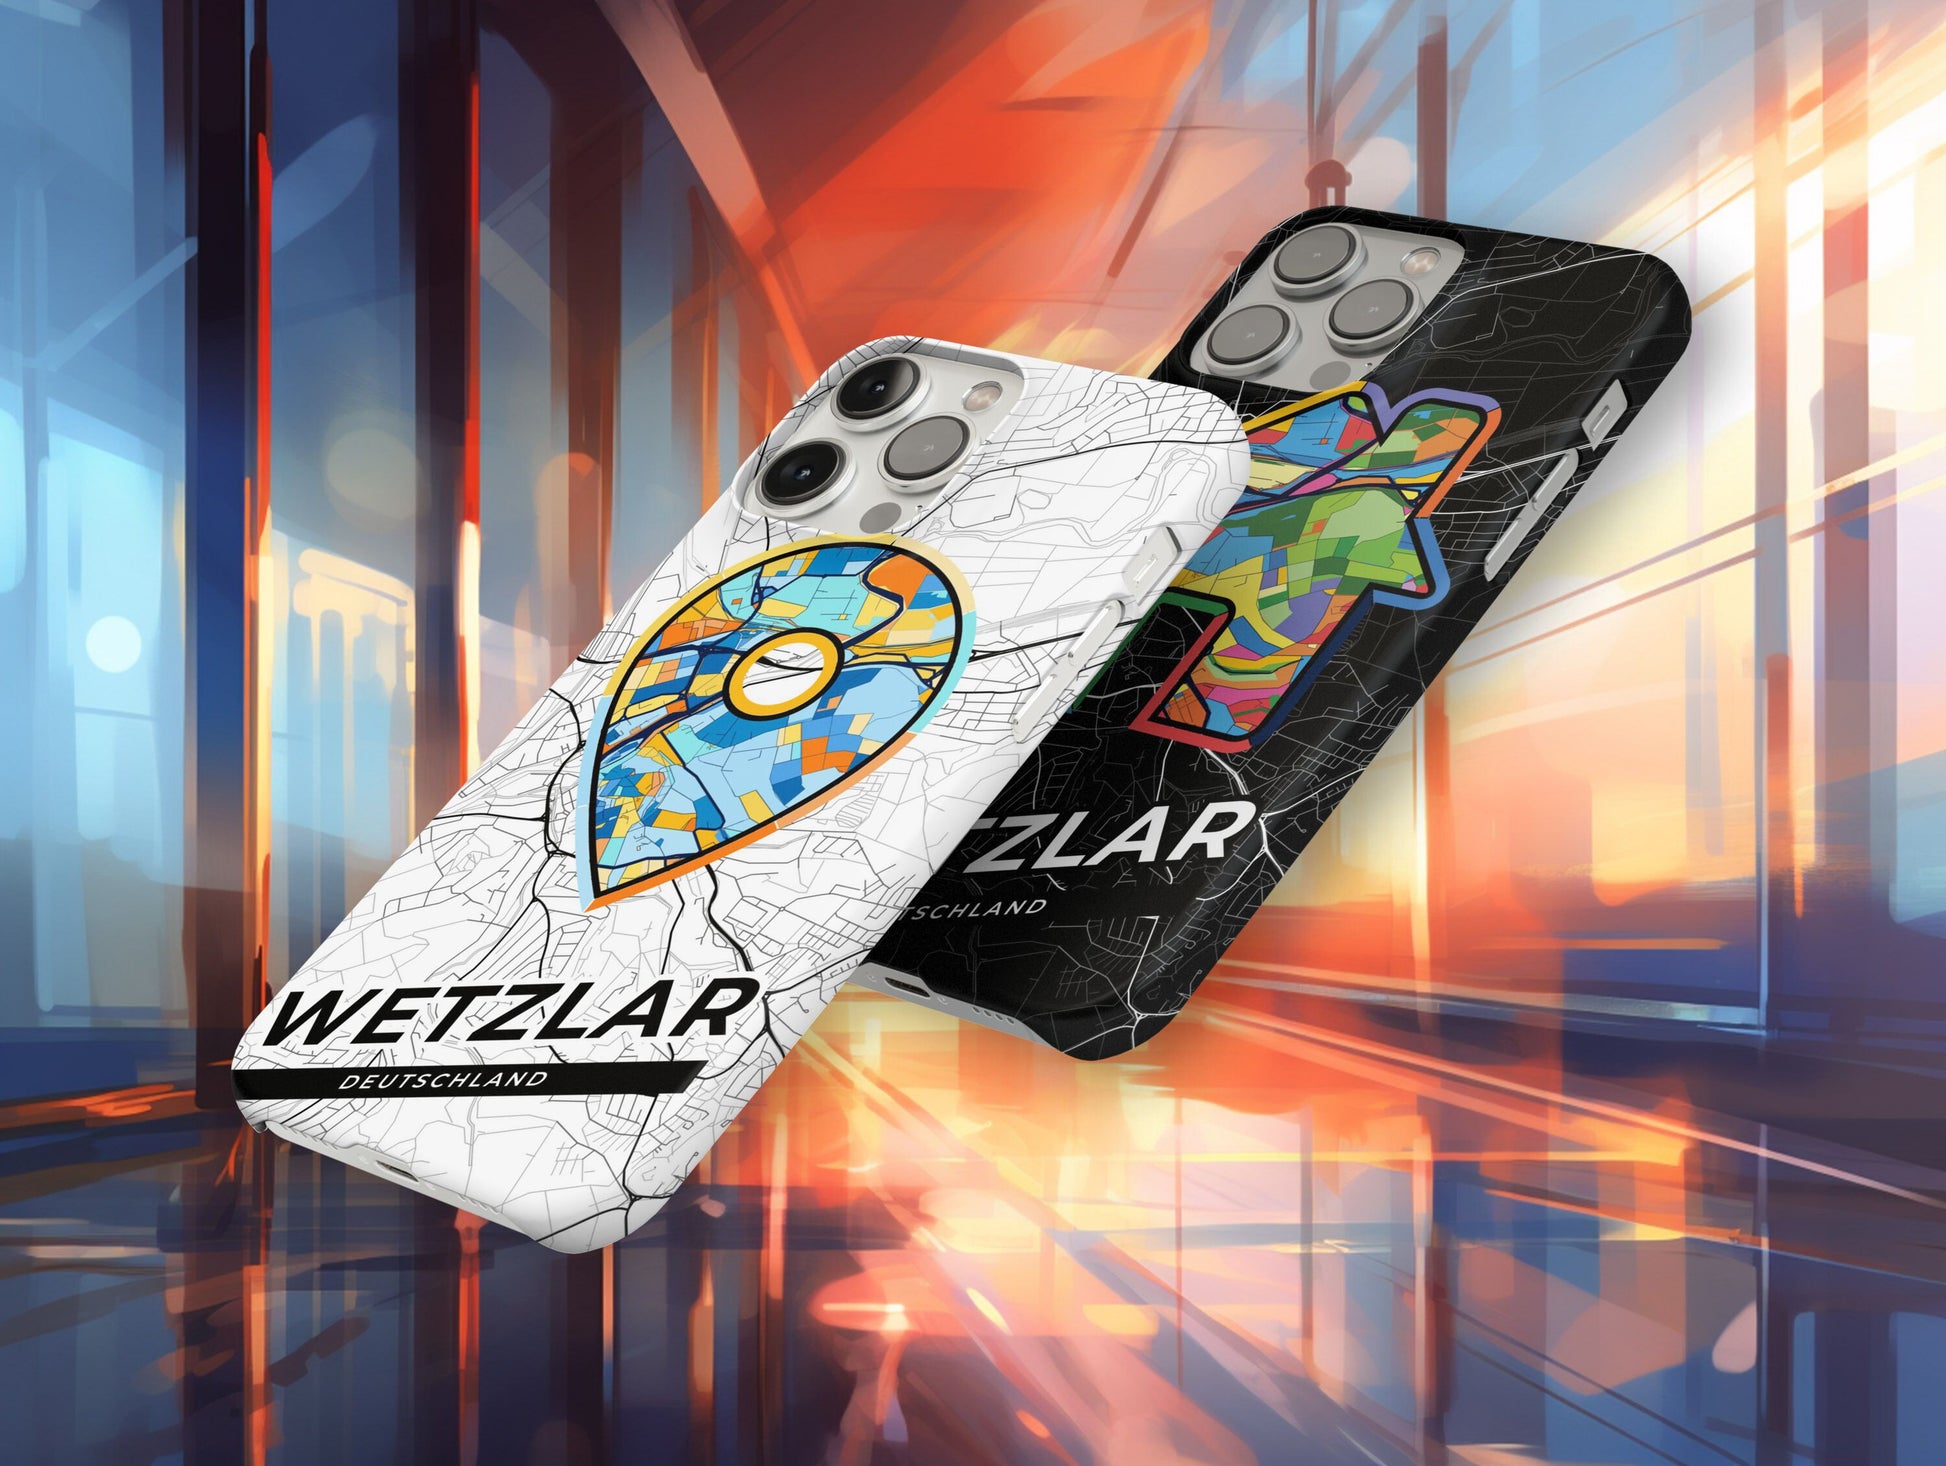 Wetzlar Deutschland slim phone case with colorful icon